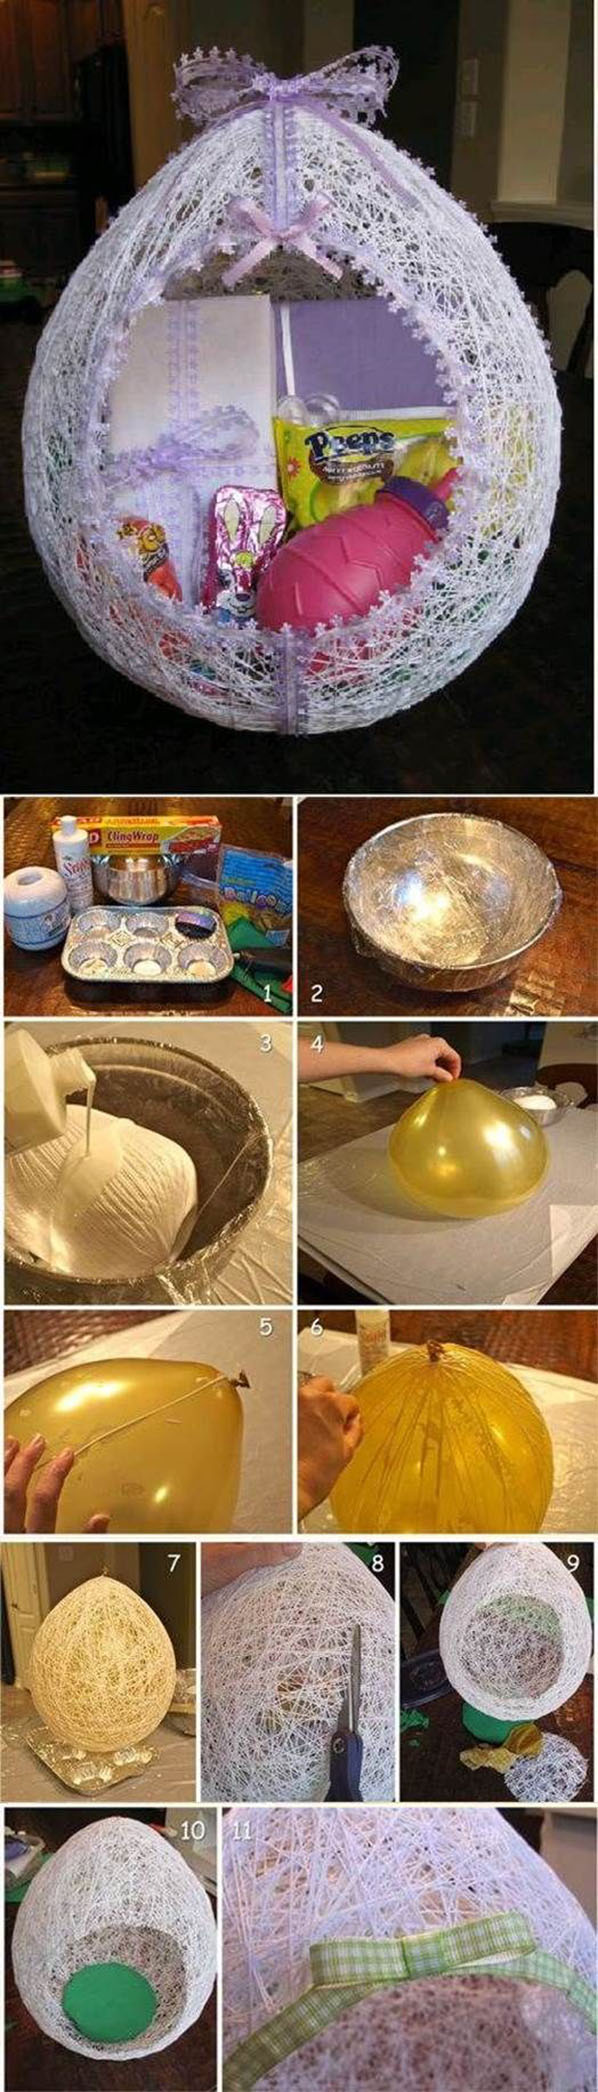 DIY Egg Shaped Easter String Basket22